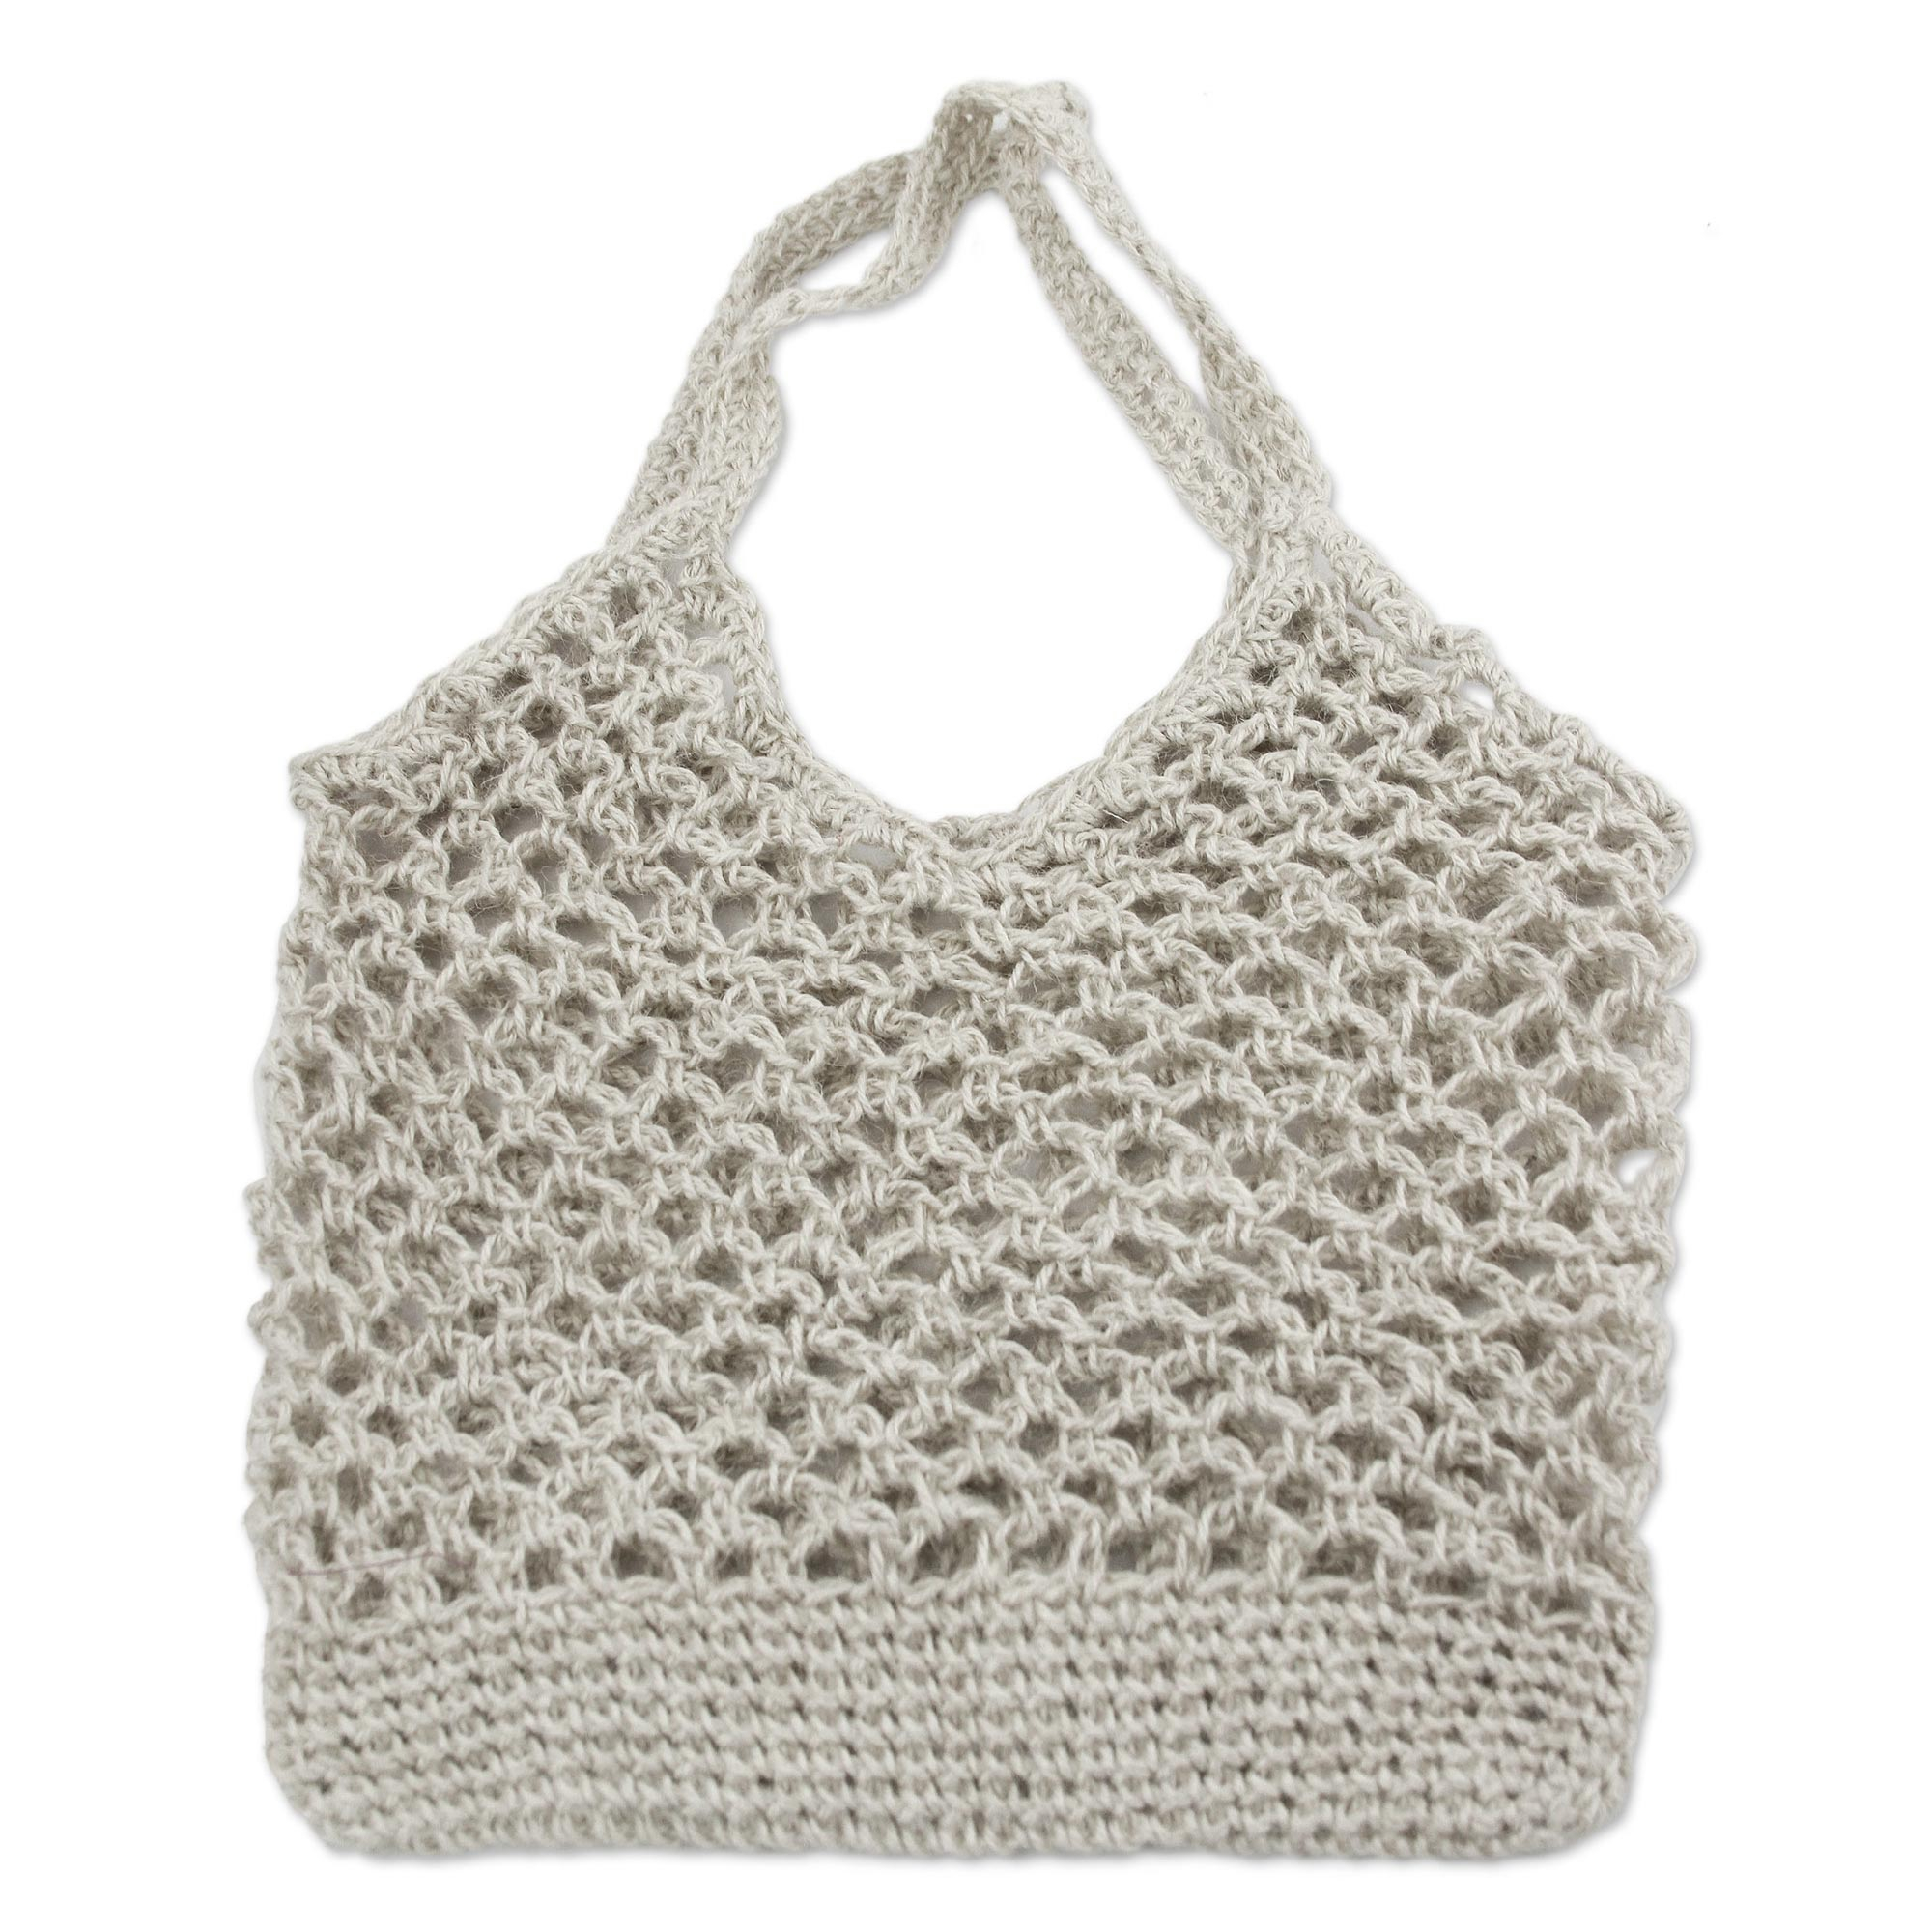 UNICEF Market | Artisan Crafted Ivory Jute Crocheted Shoulder Bag ...